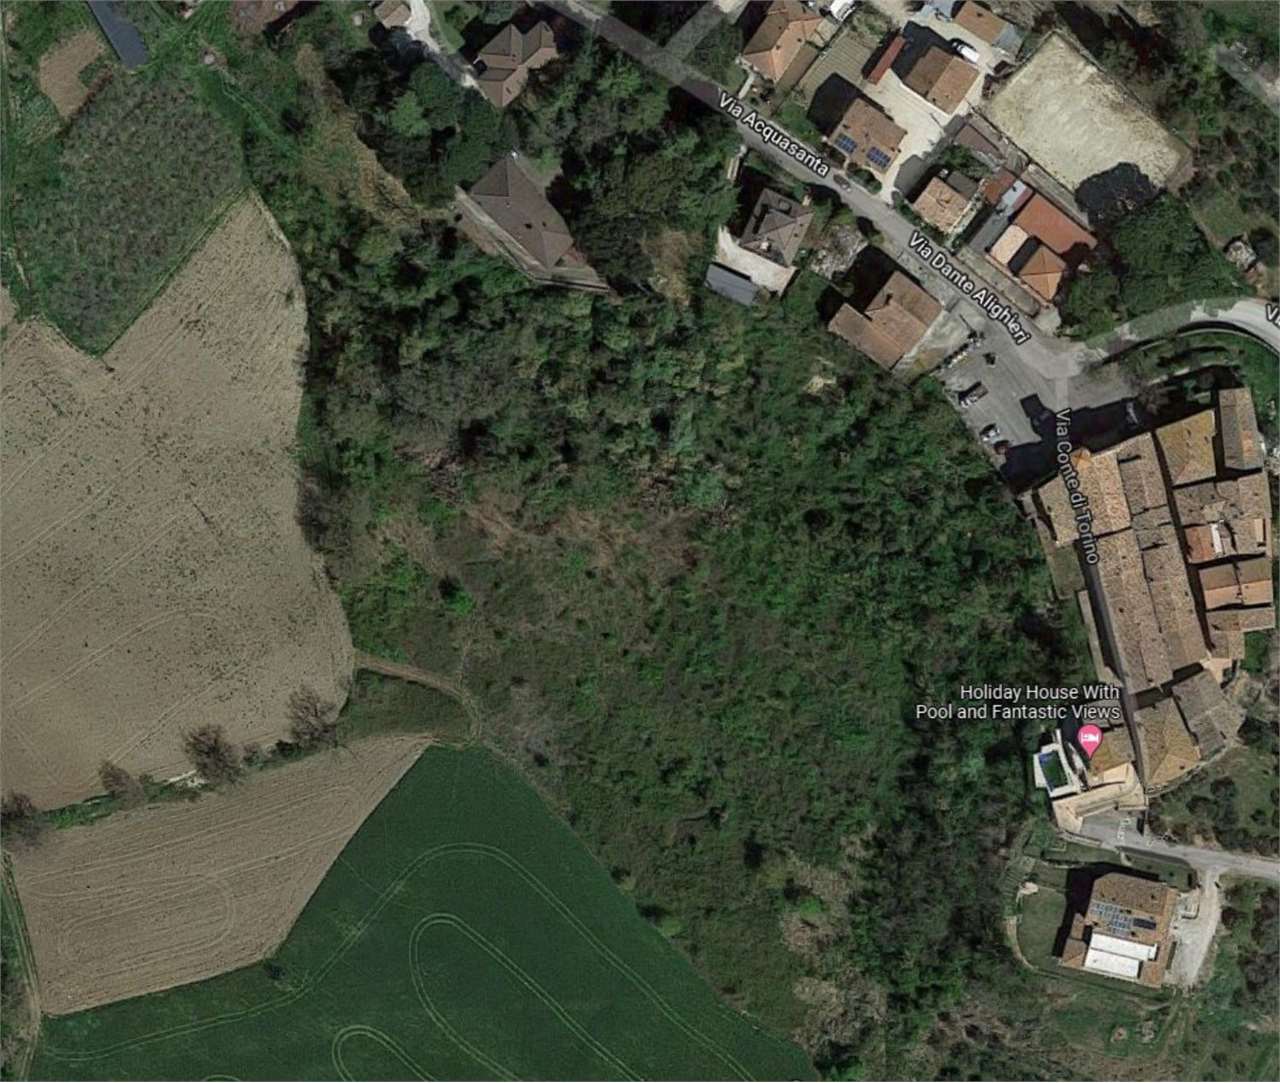 Terreno Agricolo in vendita a Collazzone, 1 locali, prezzo € 10.000 | PortaleAgenzieImmobiliari.it